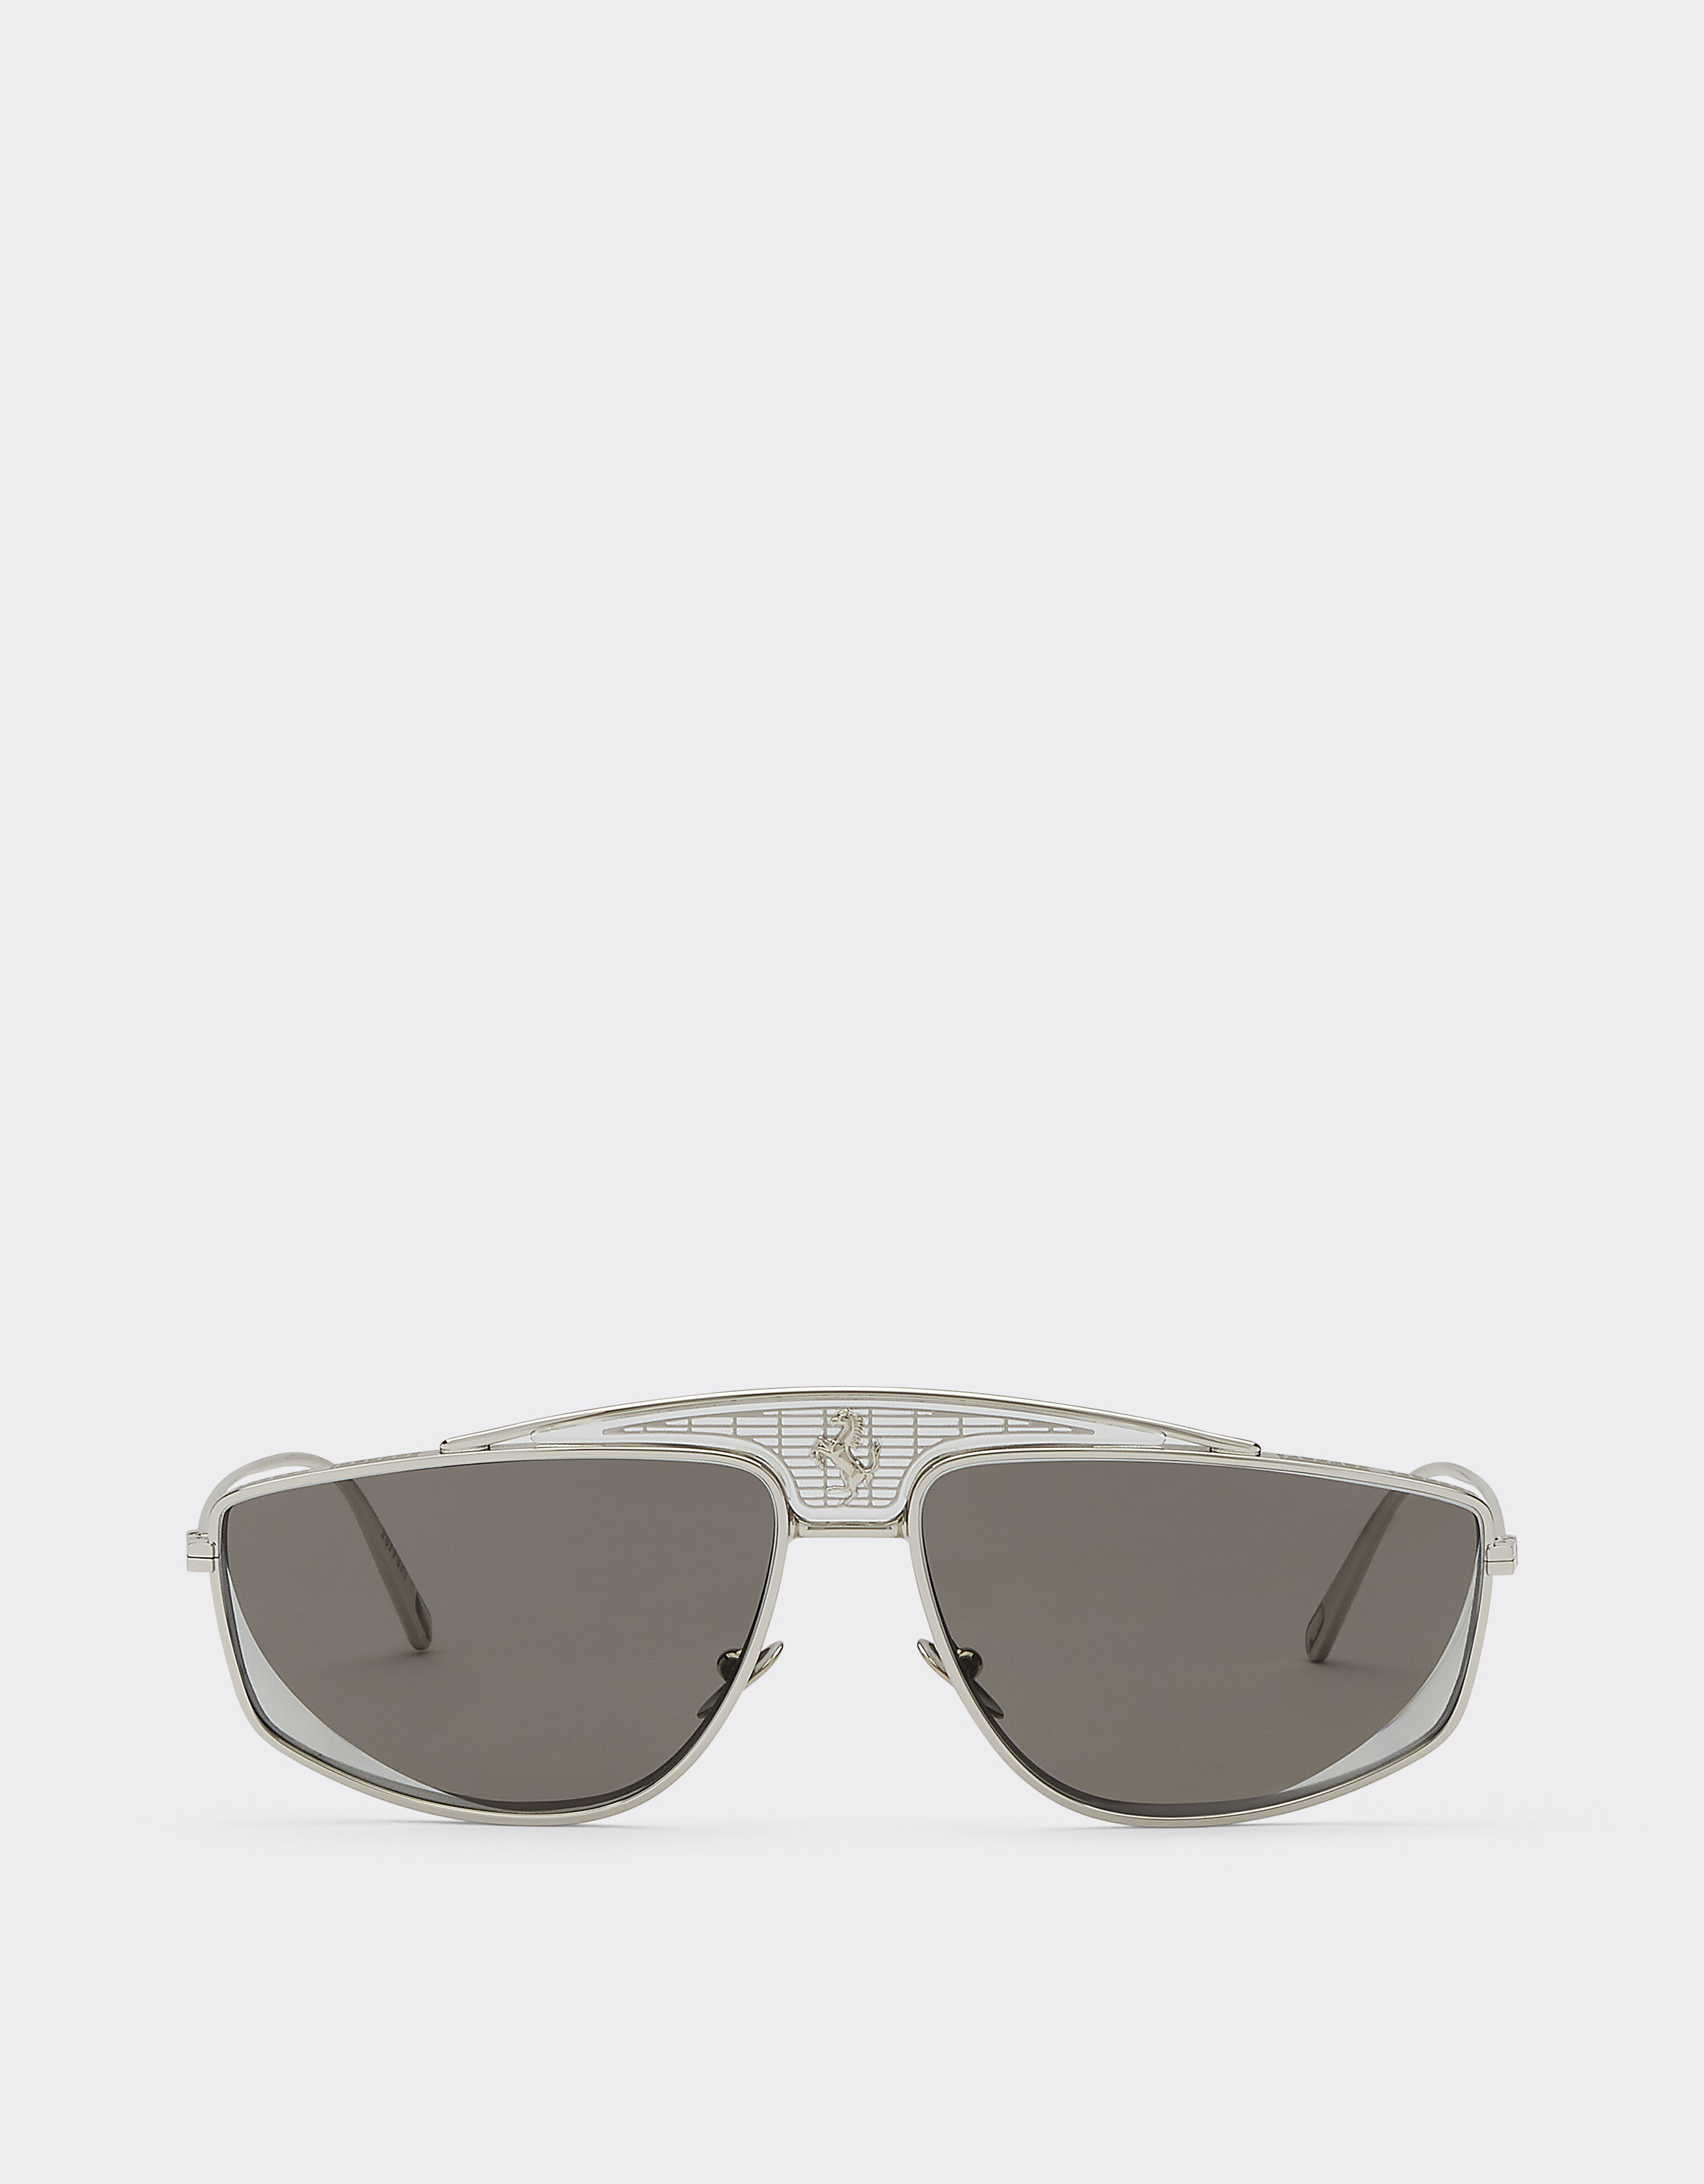 Ferrari 法拉利银色镜面镜片太阳镜 银色 F0408f